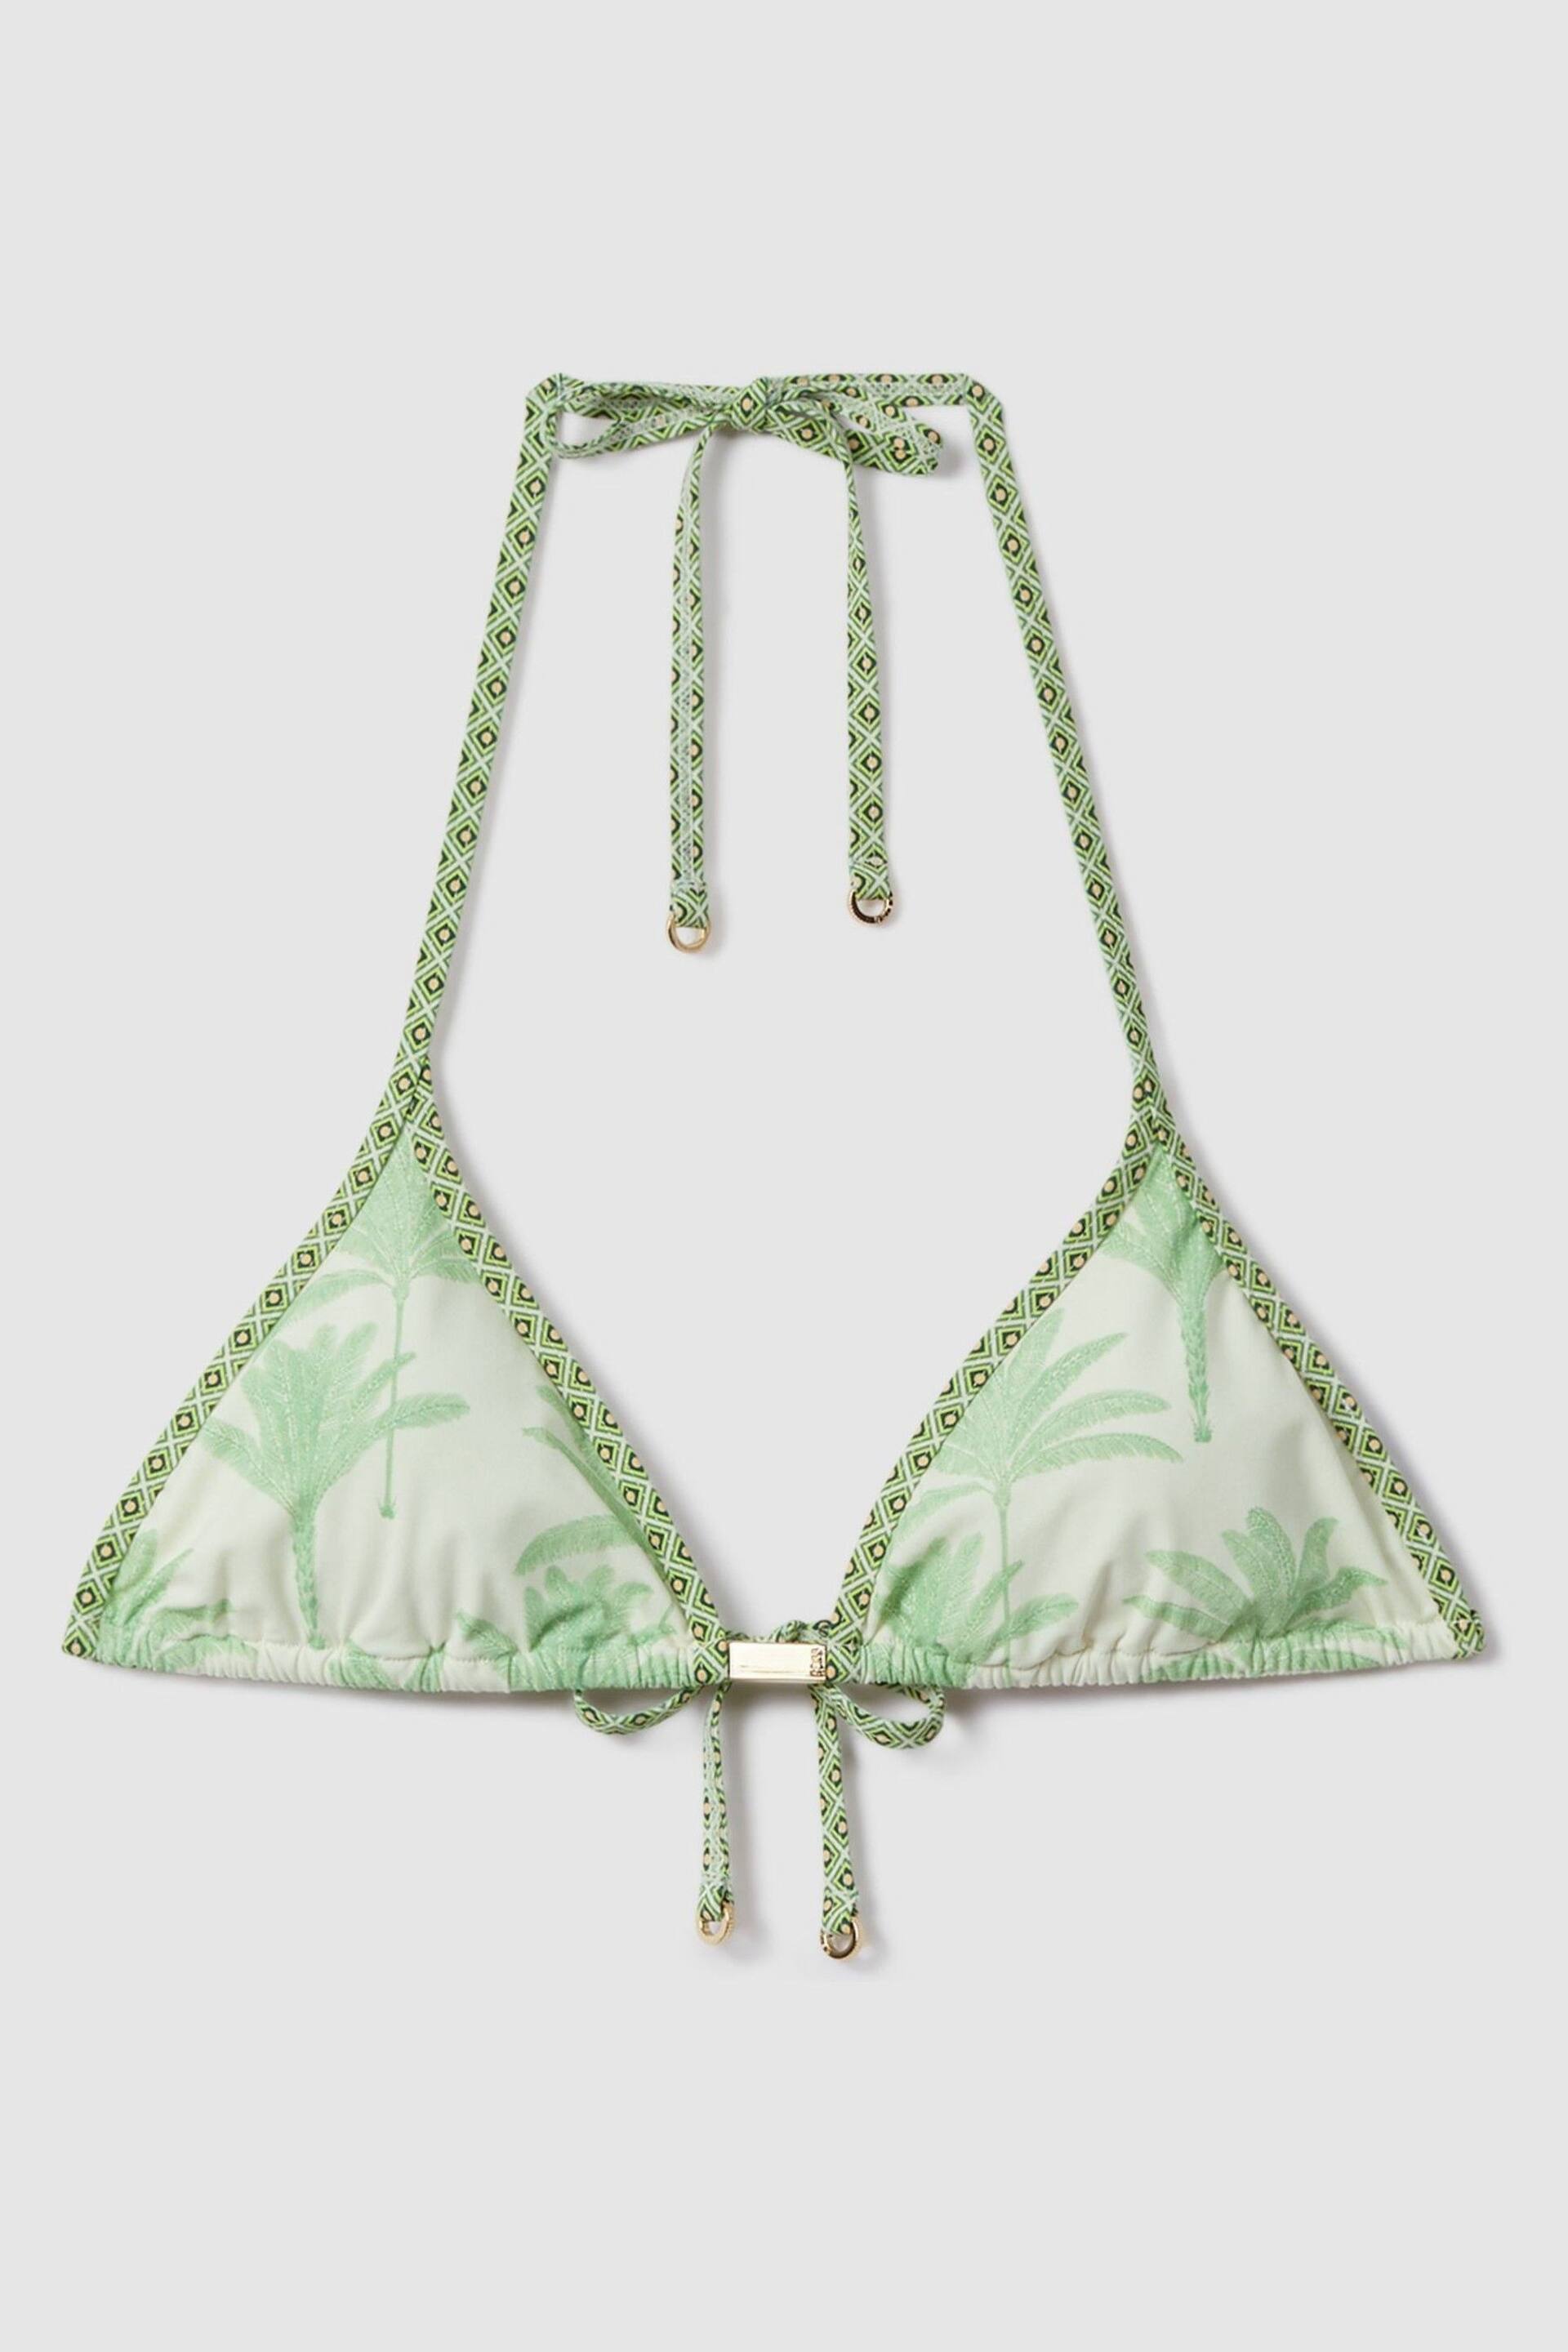 Reiss Green/Cream Thia Palm Tree Print Bikini Top - Image 2 of 6